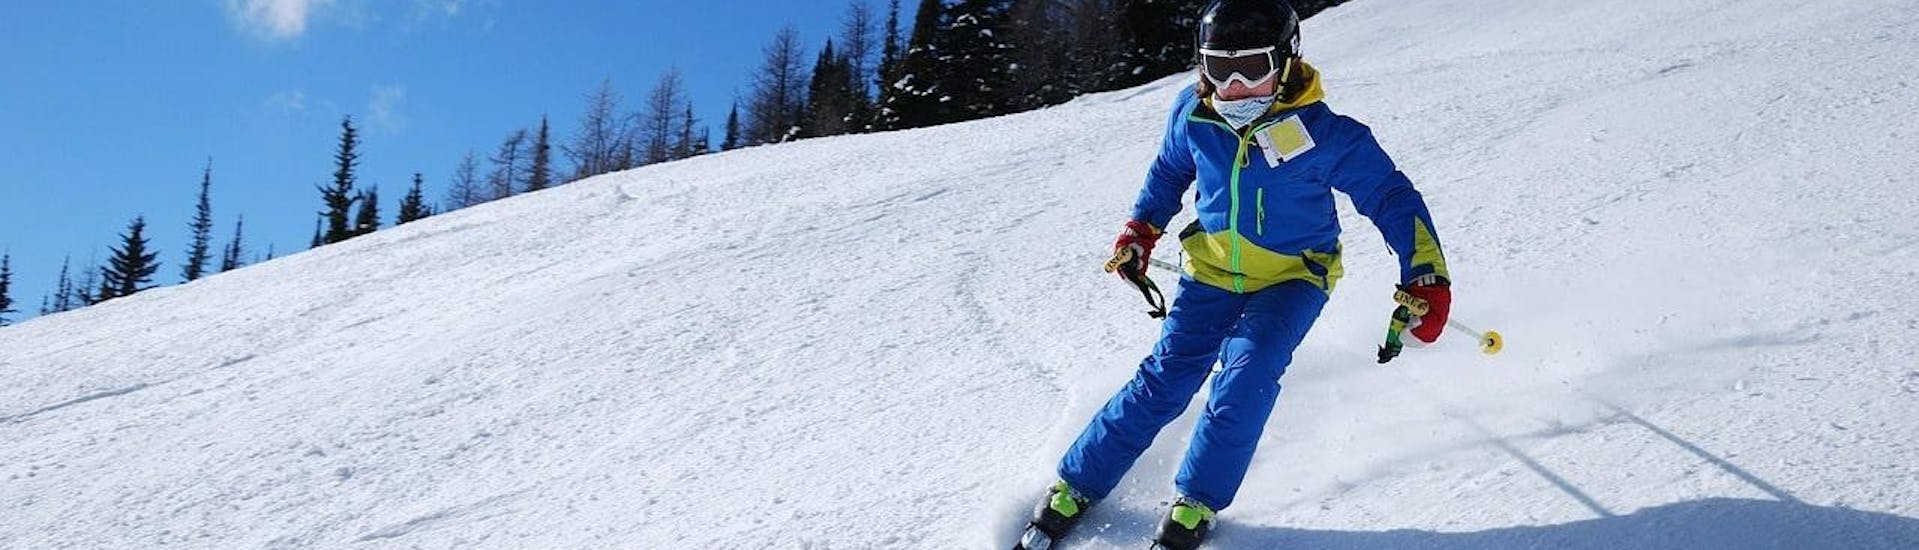 Een skiër skiet vol vertrouwen een helling af tijdens hun Privé Skilessen voor Kinderen - Vakantie met de skischool Moonshot La Bresse.